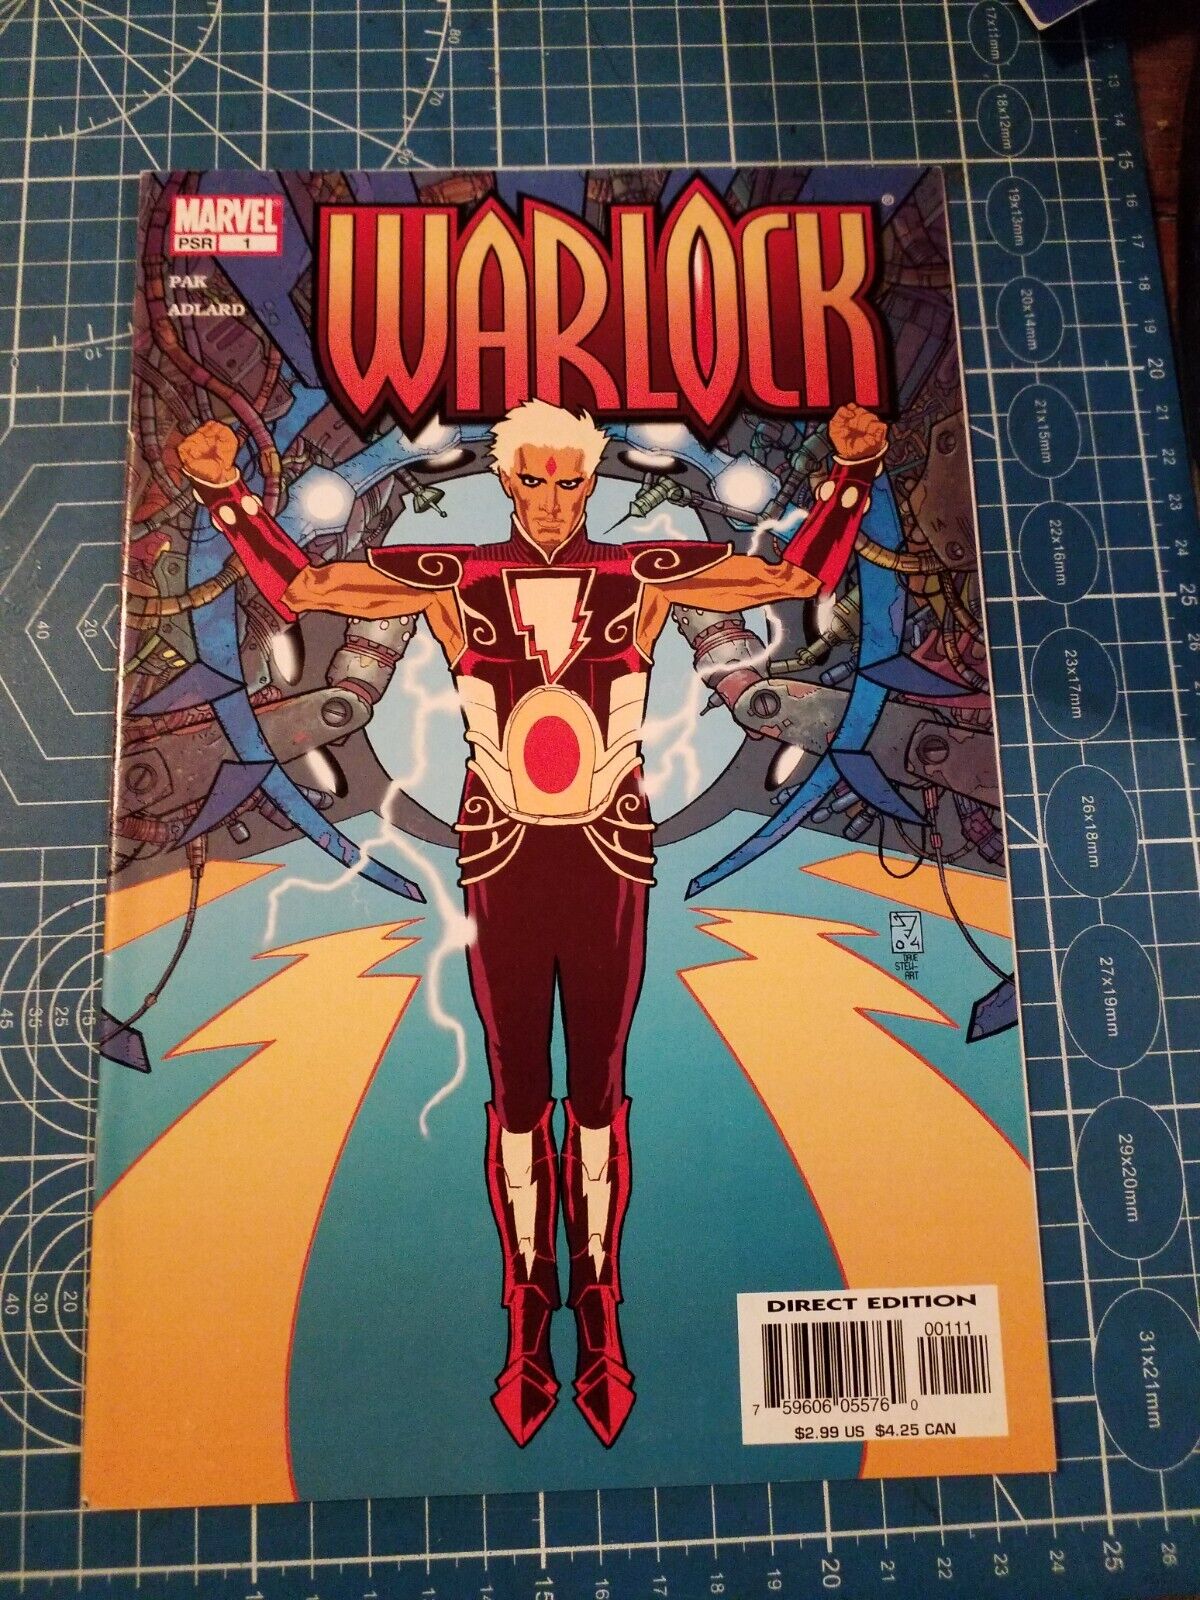 Warlock Vol 4 #1 Marvel Comics 8.0 H5-234